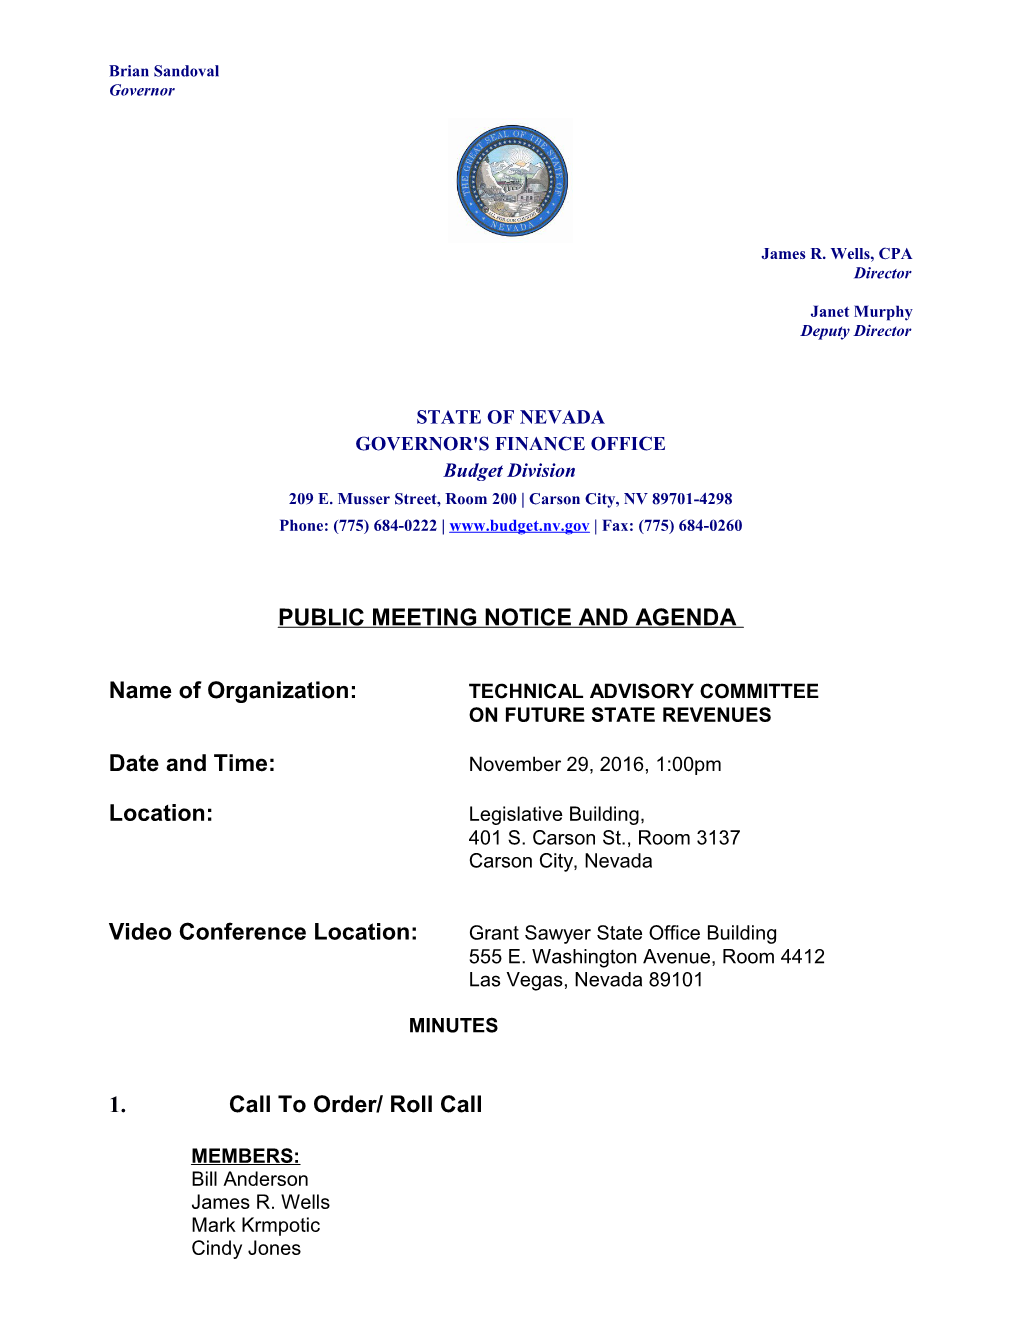 Public Meeting Notice and Agenda